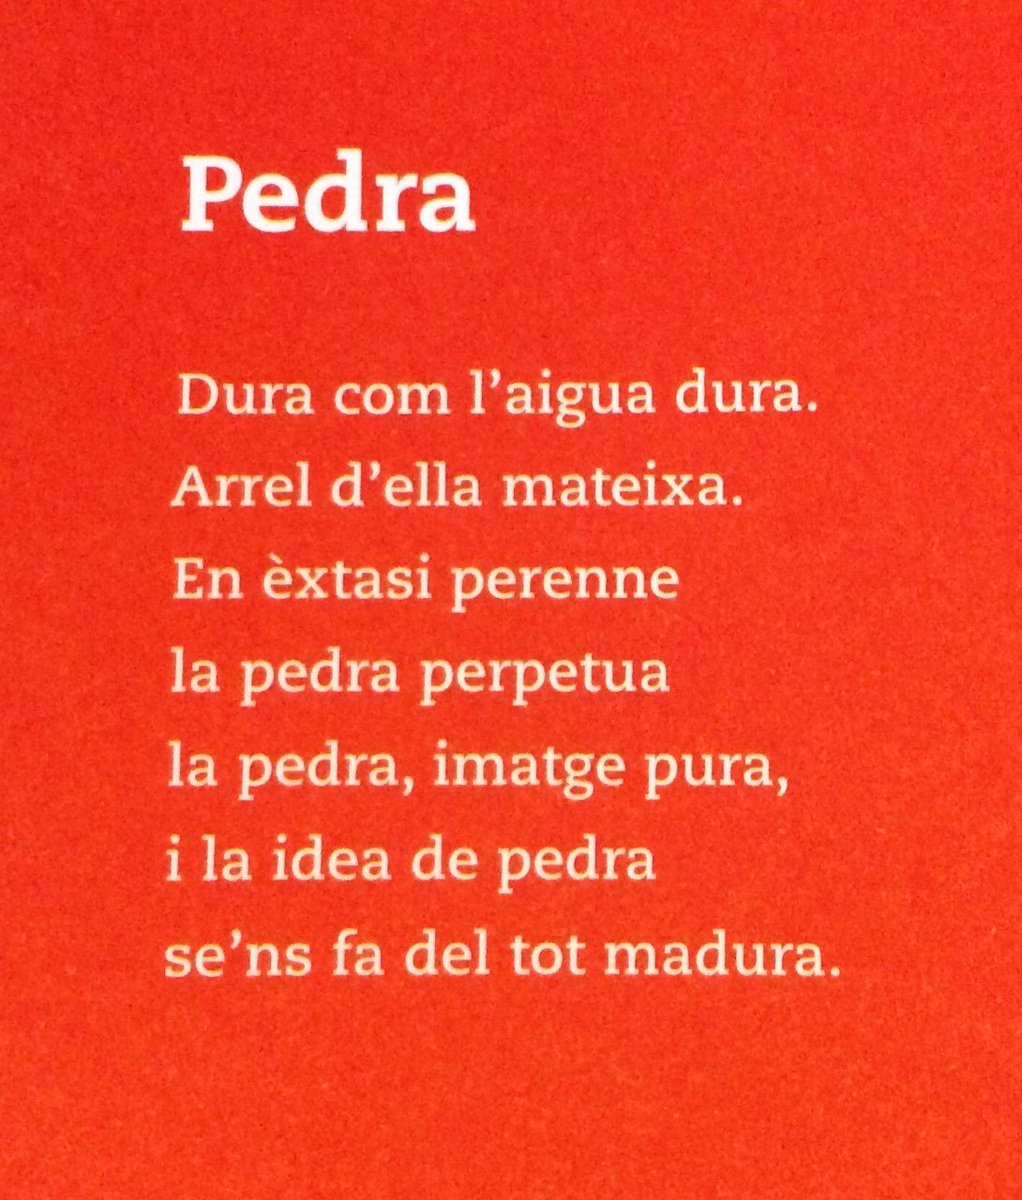 Des de la Fundació Palau celebrem el Dia de la poesia catalana a internet!
Ens agradaria encetar aquest dia amb un poema de Josep Palau i Fabre pertanyent a Jo soc el meu propi experiment, tretze poemes de l'Alquimista il·lustrats per Arnal Ballester.

PEDRA